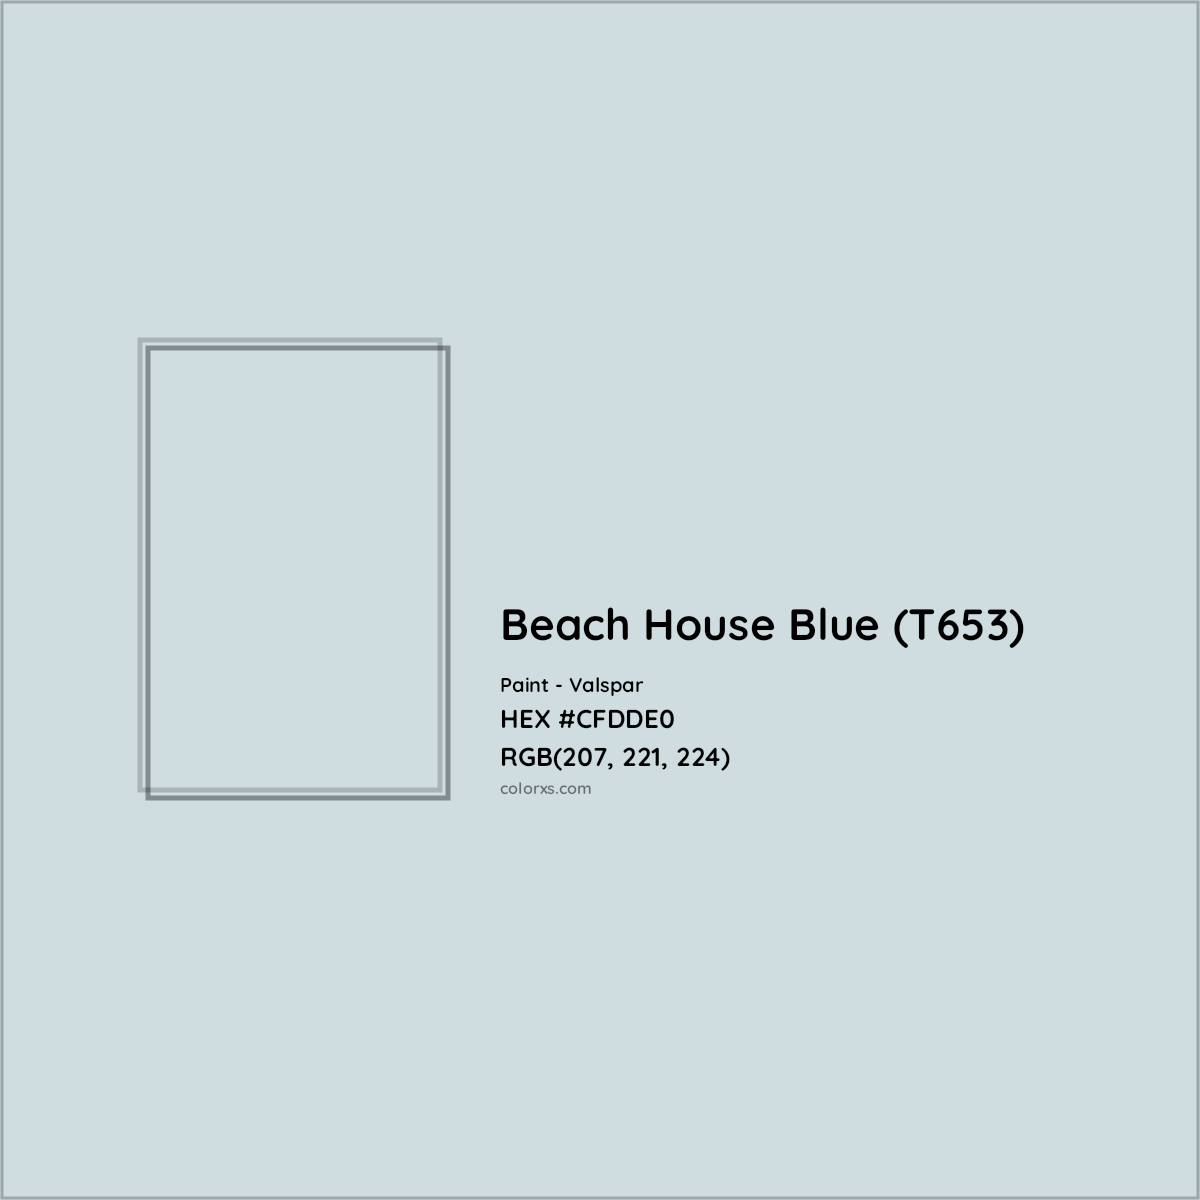 HEX #CFDDE0 Beach House Blue (T653) Paint Valspar - Color Code